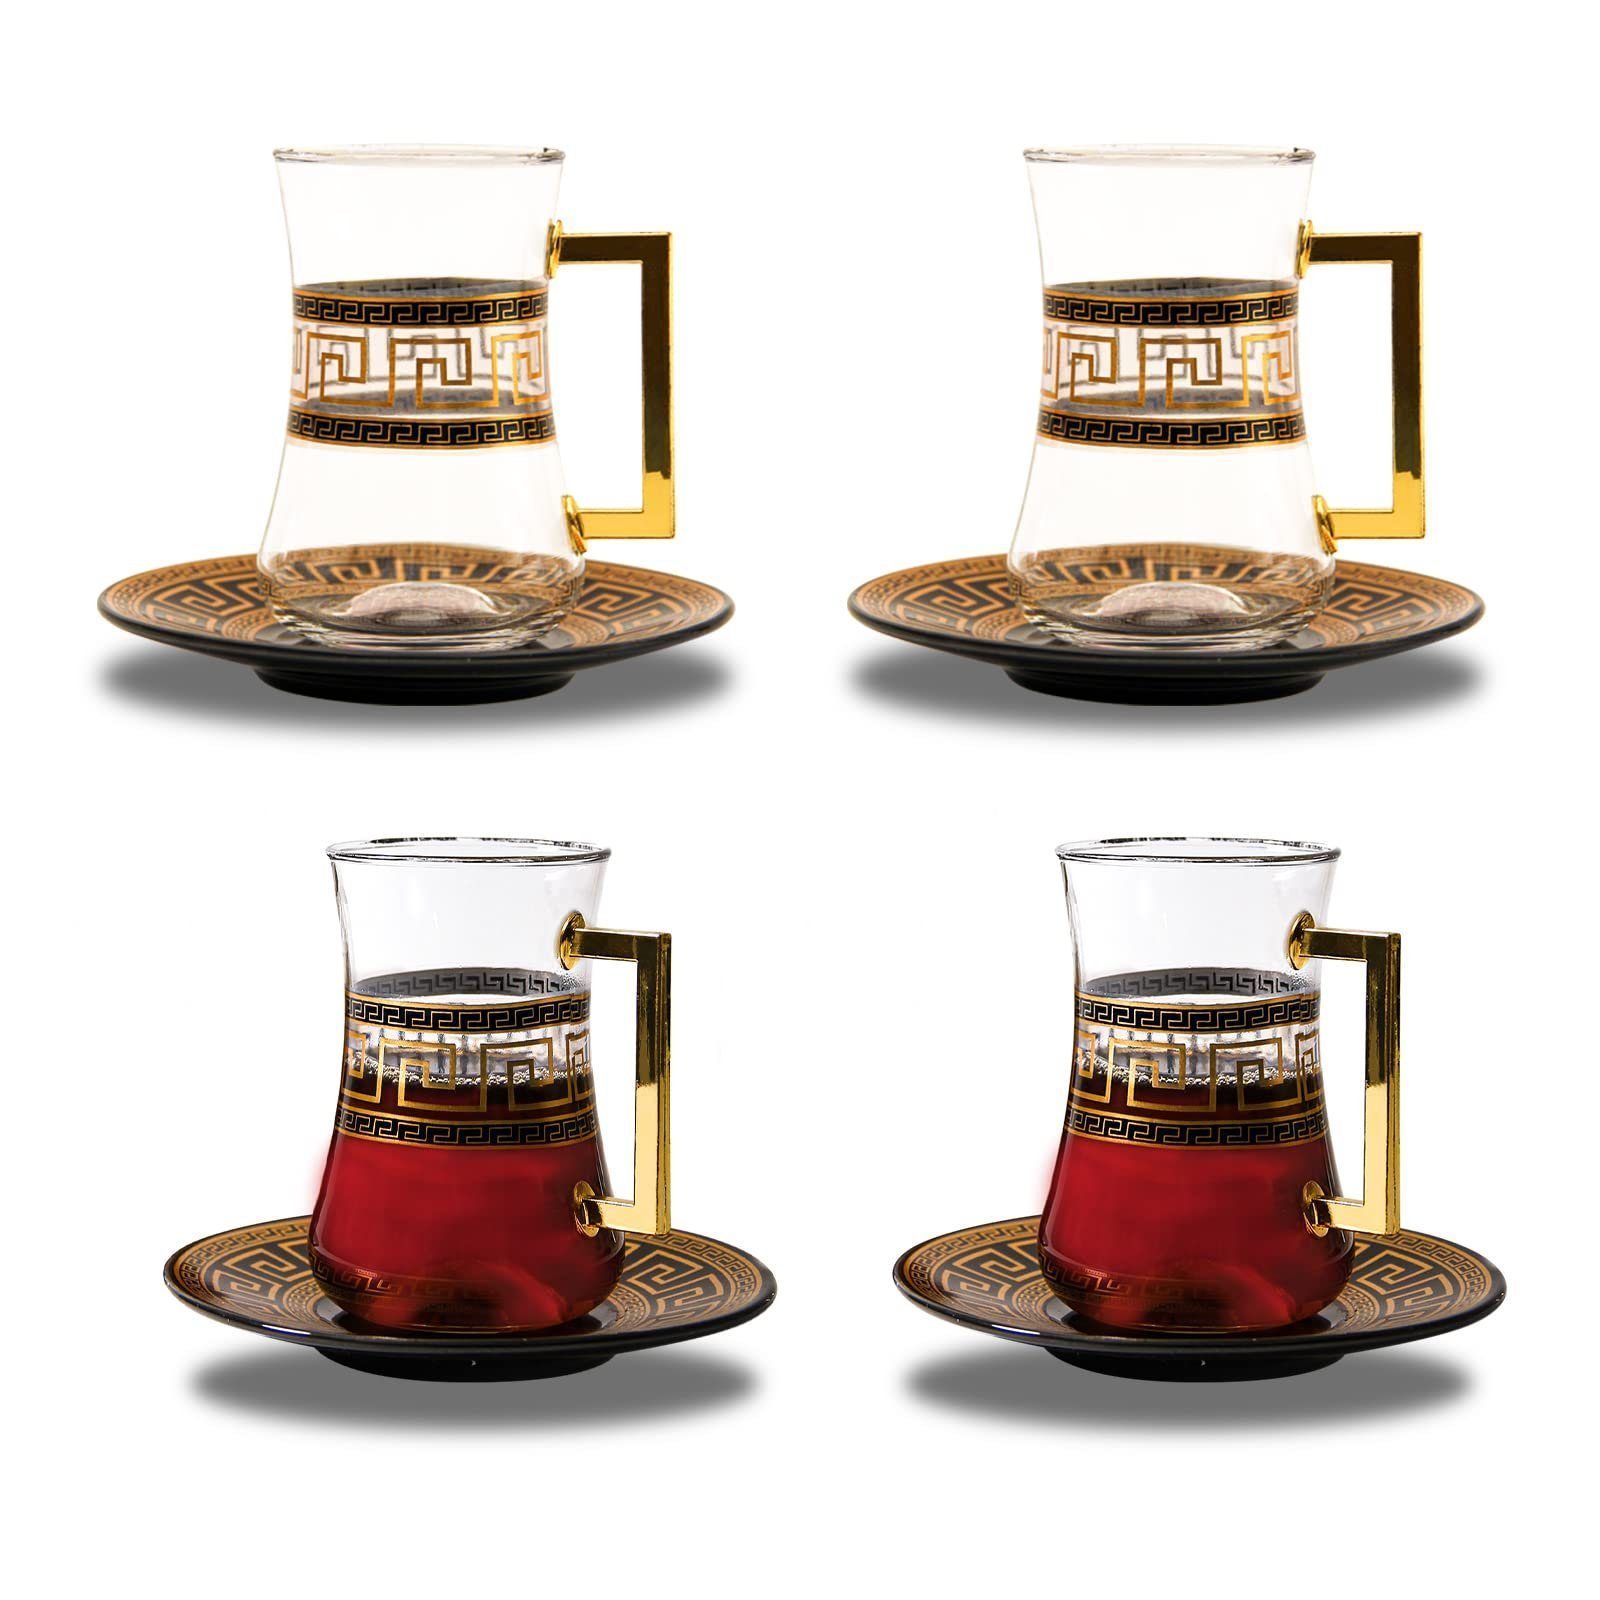 LB LICHTENBERG Teeglas Türkisches Tee Set, Glas Türkische Teegläser mit  Untertasse